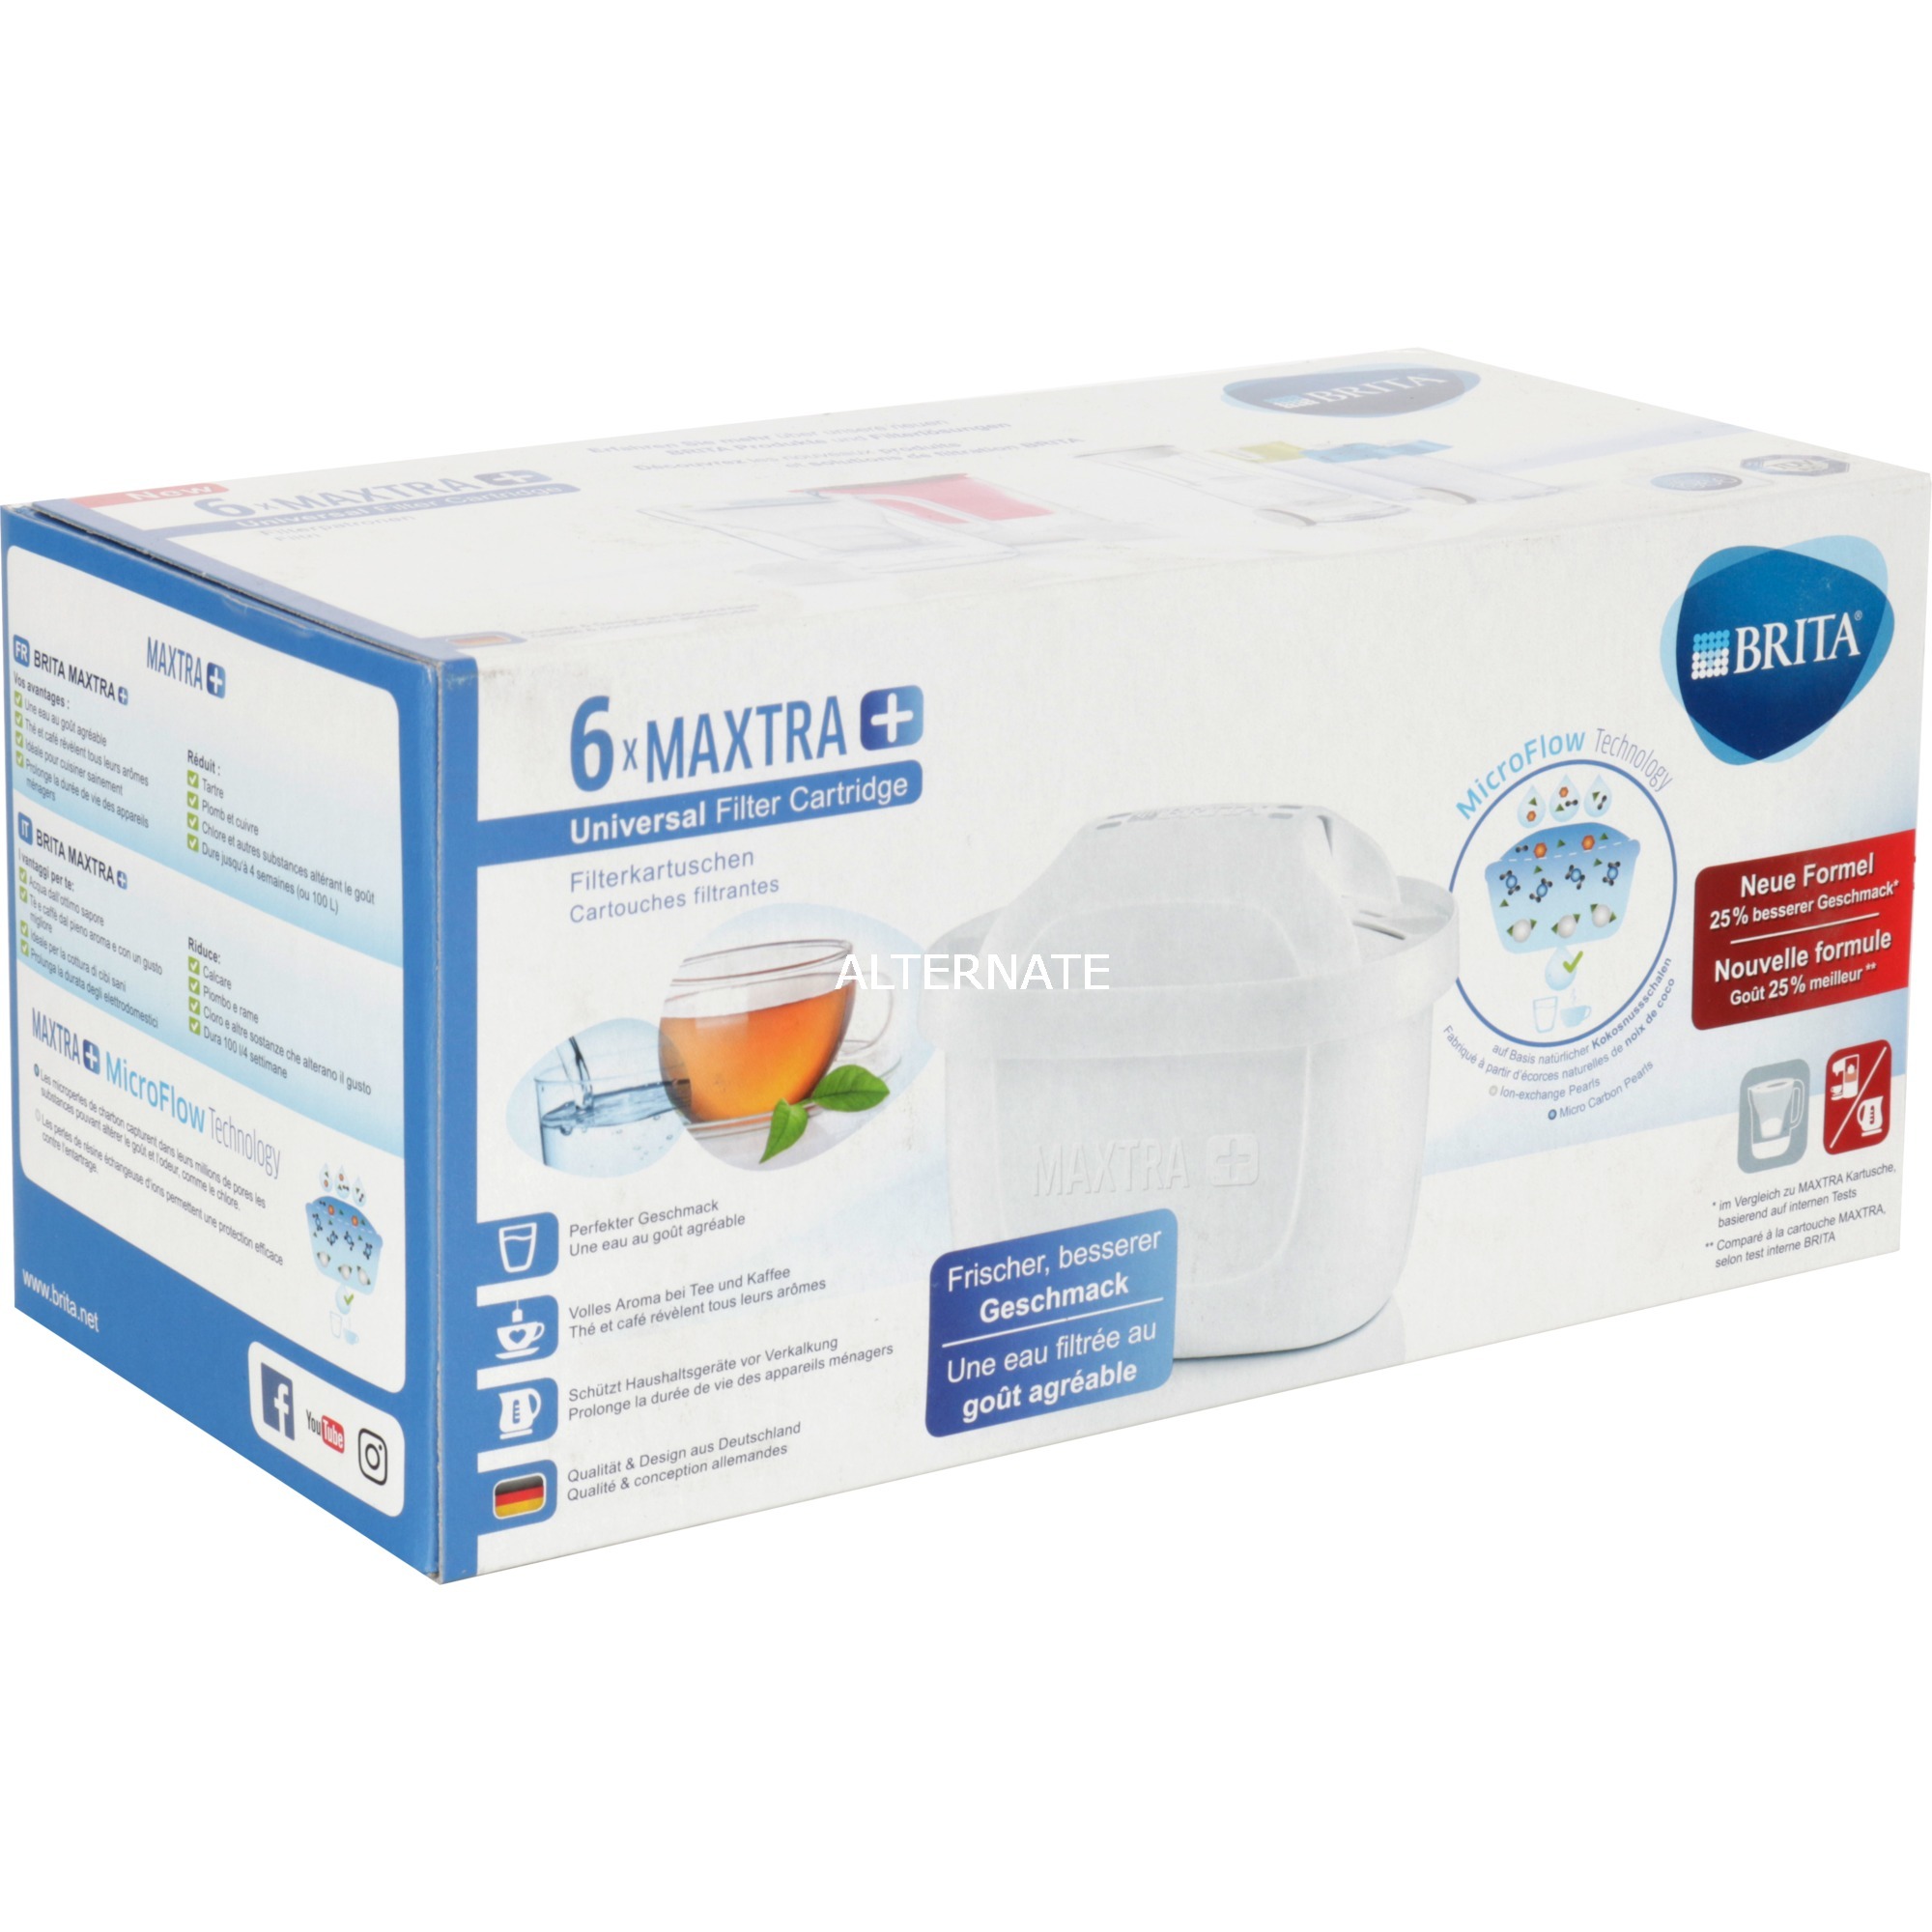 Image of Alternate - MAXTRA+ Pack 6, Wasserfilter online einkaufen bei Alternate